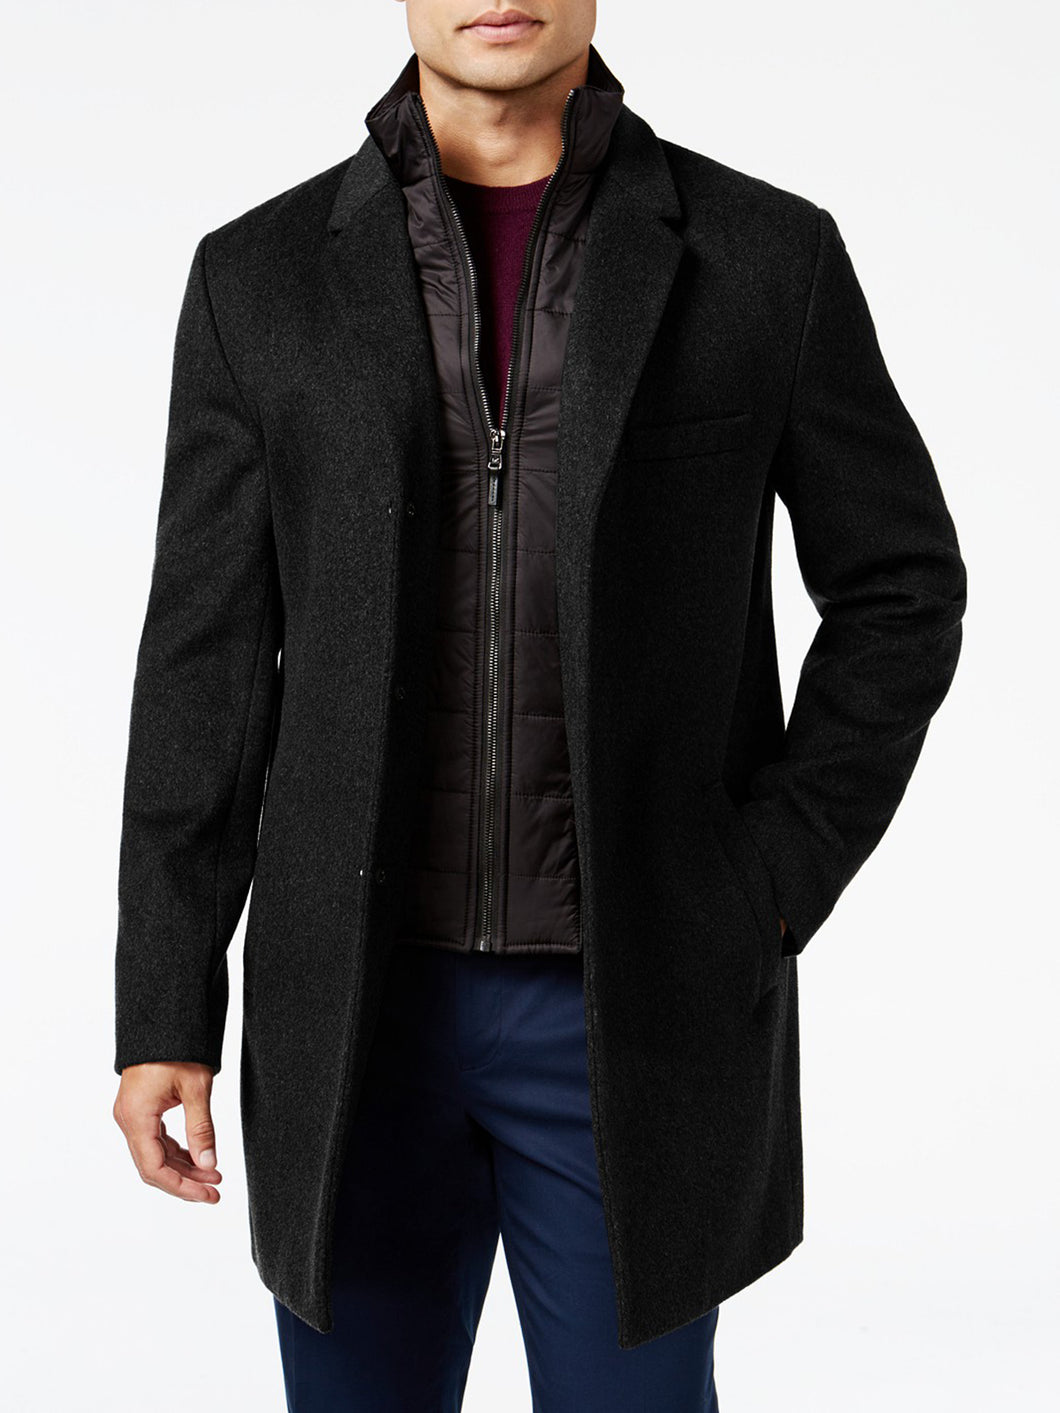 Classic Black Woolen Coat for Men